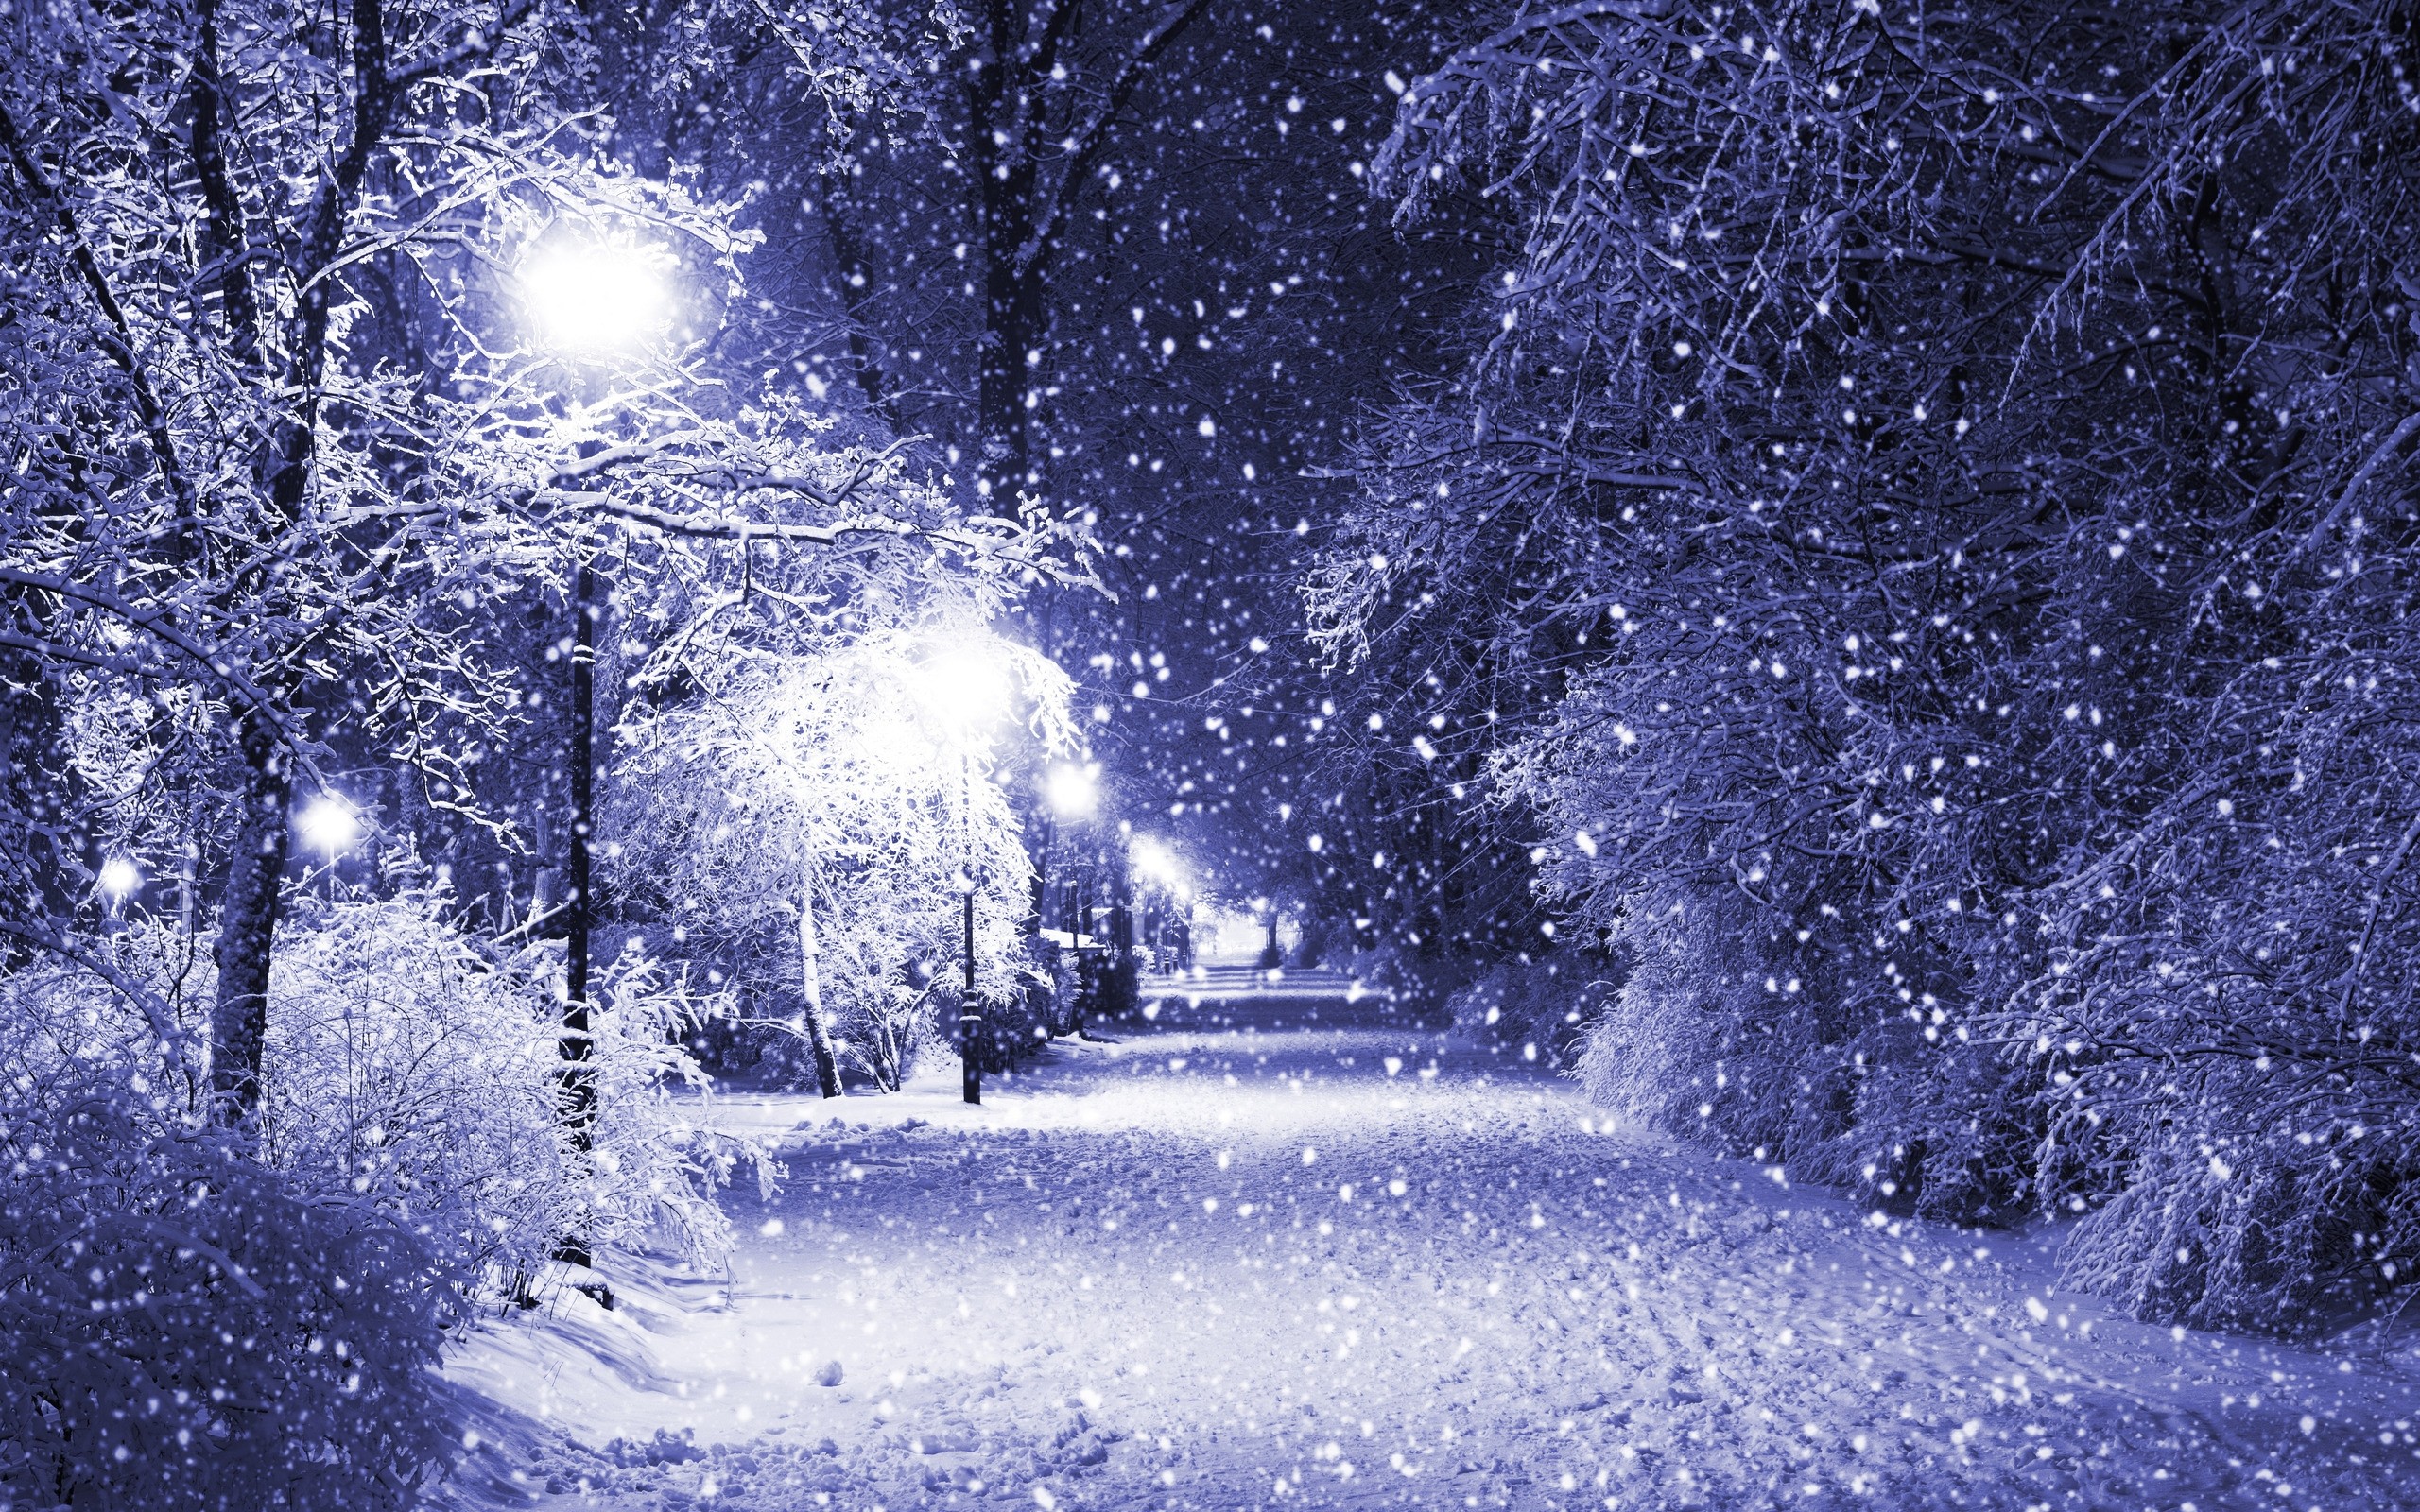 #snow, #park, #winter, #trees, #night, #path